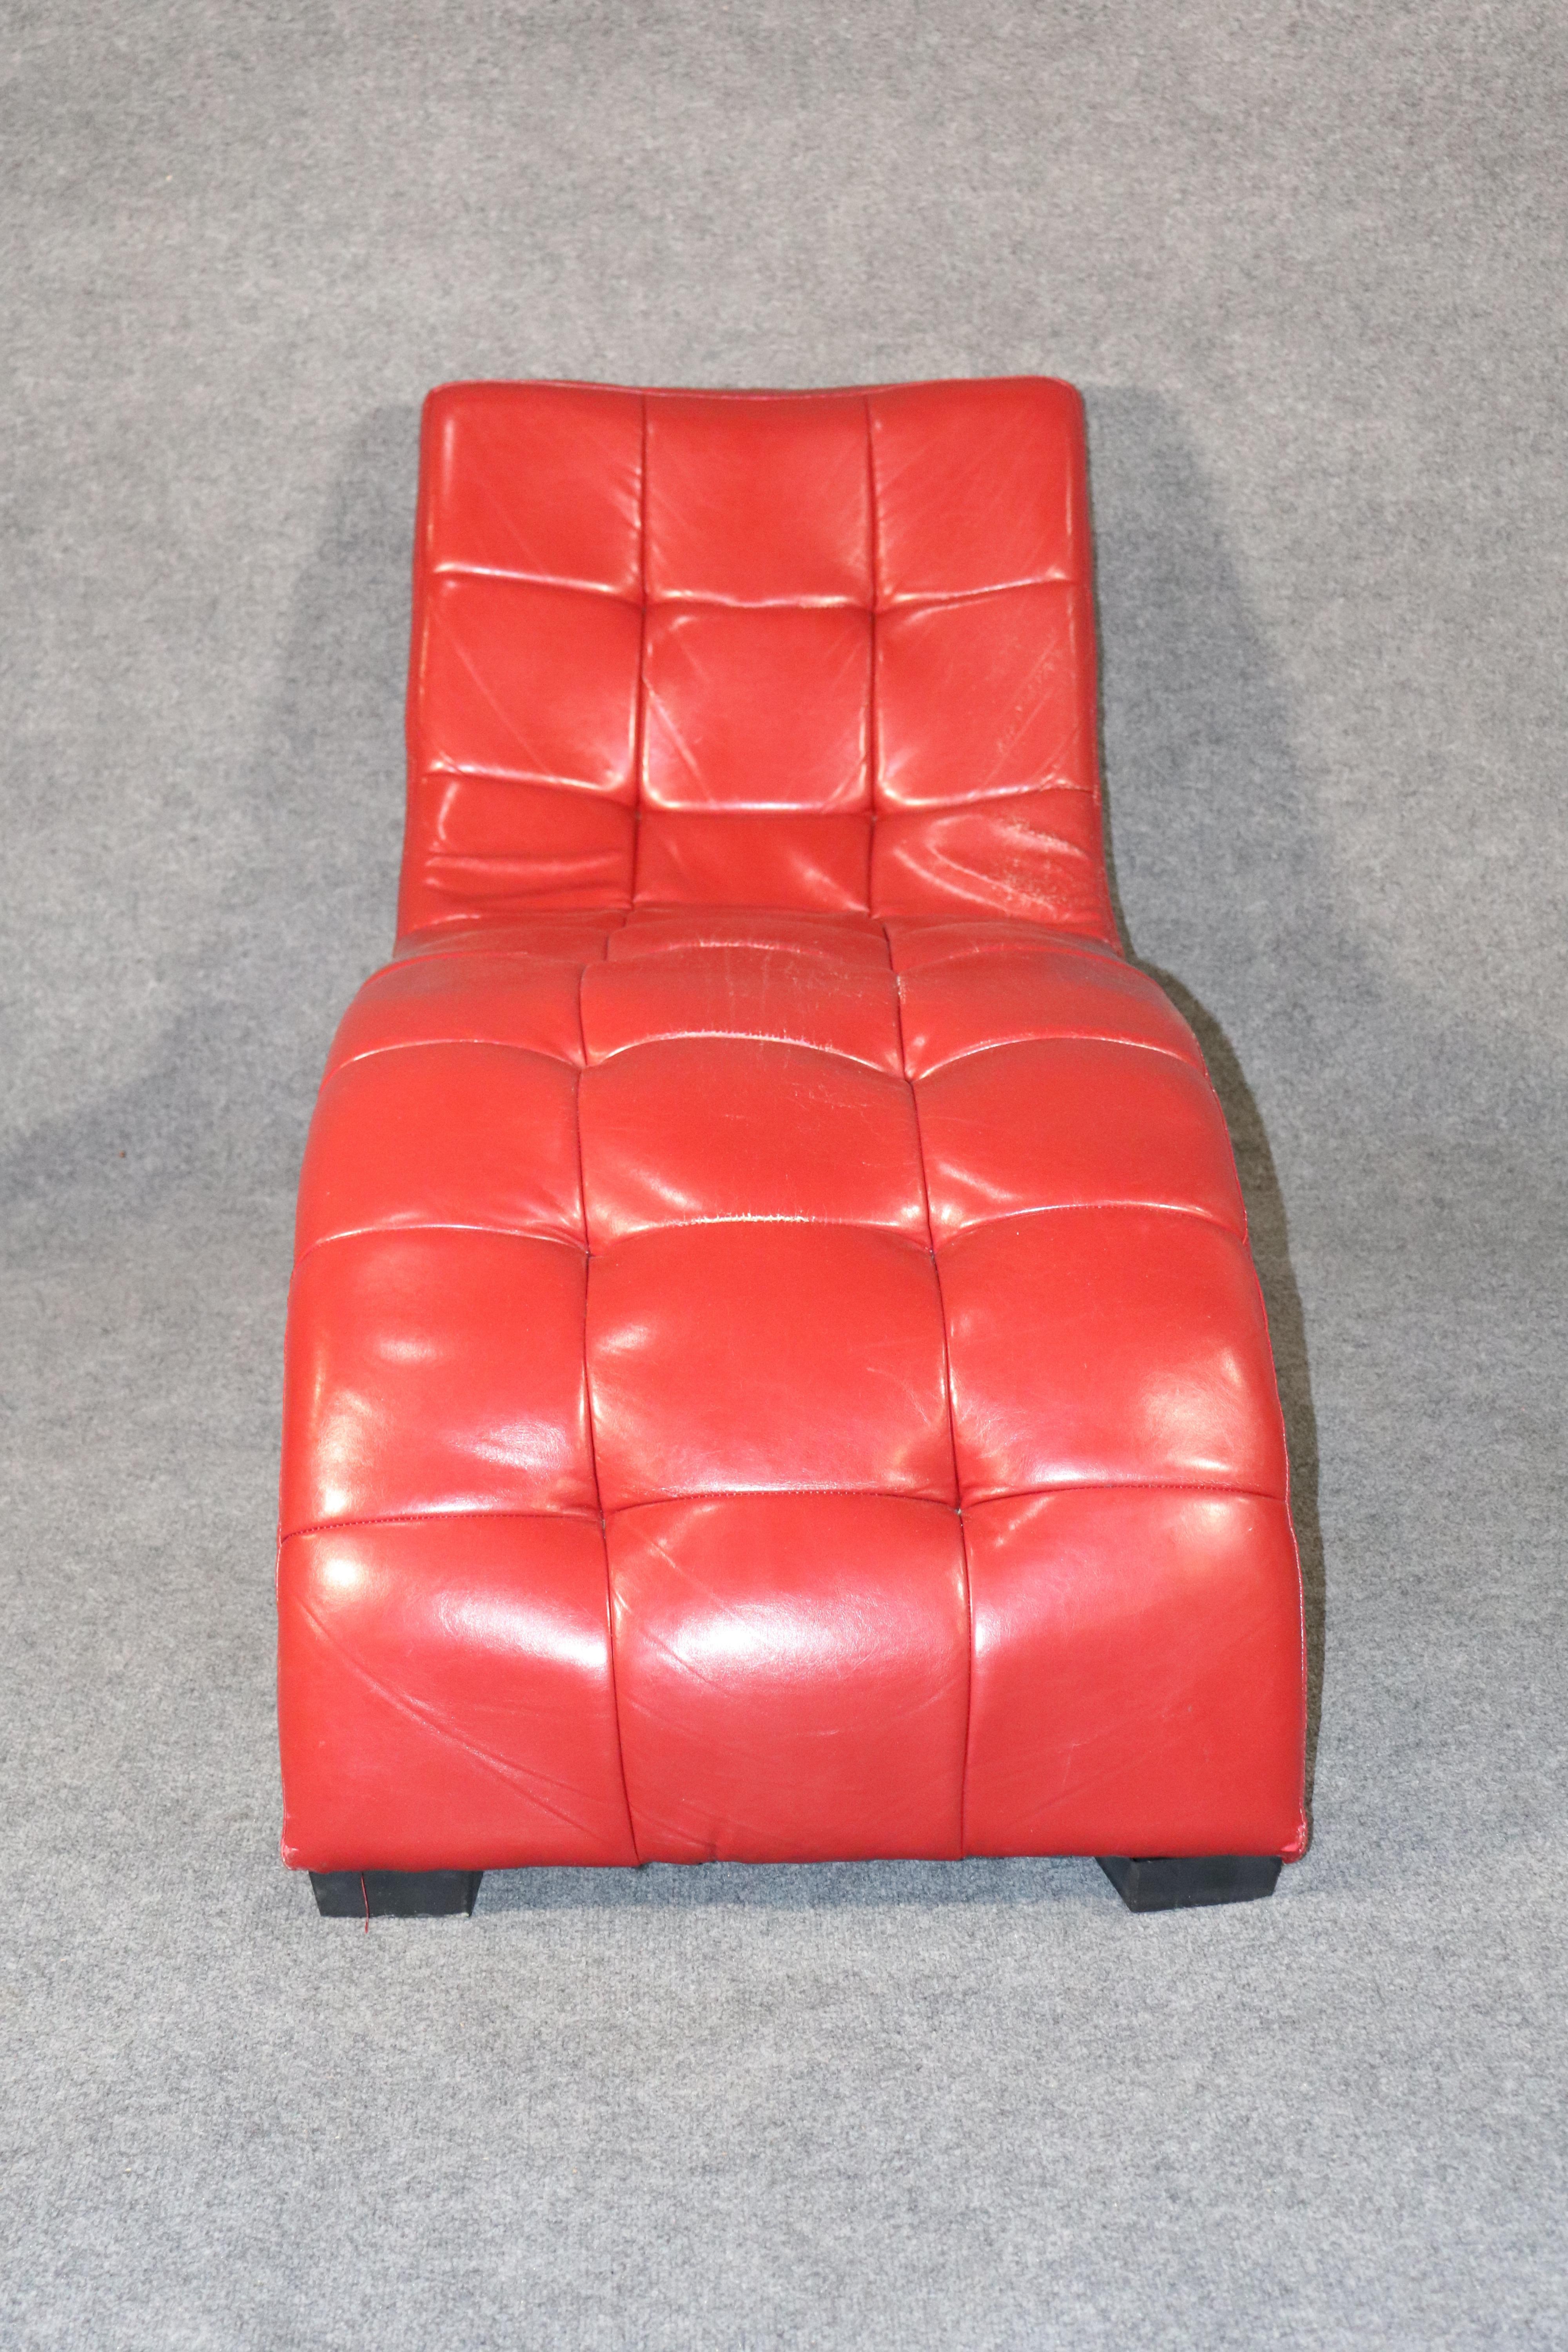 Chaise longue avec revêtement en cuir tufté. Design attrayant en forme de vague avec des pieds en bois.
Veuillez confirmer l'emplacement